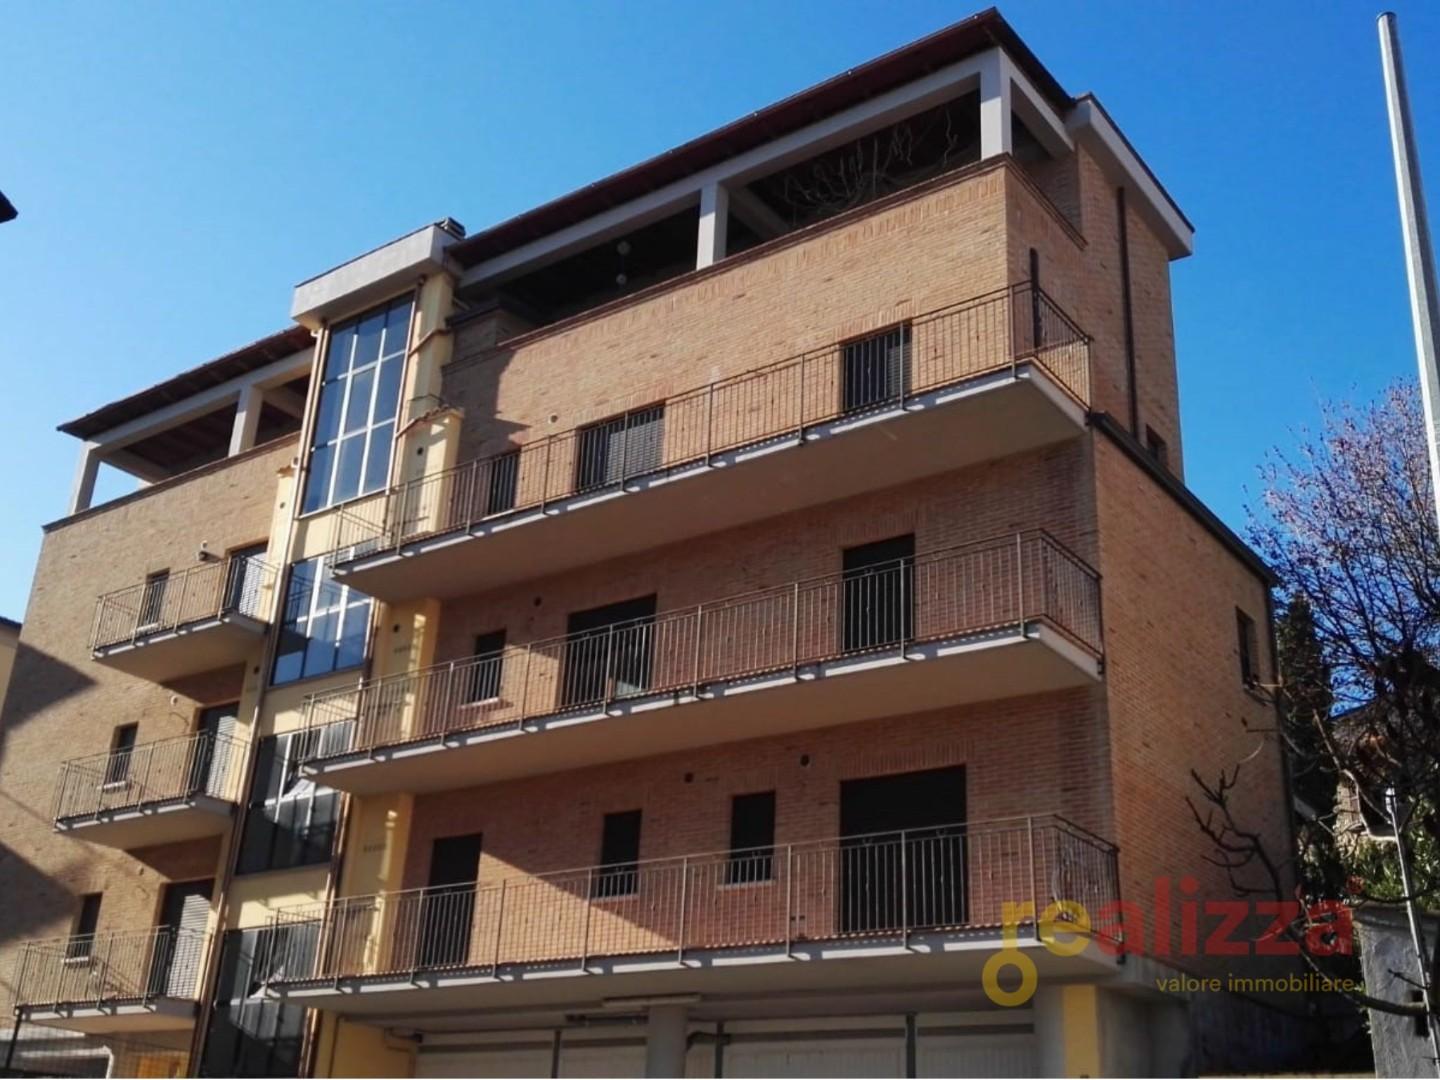 Appartamento in vendita a Perugia, 2 locali, prezzo € 80.000 | PortaleAgenzieImmobiliari.it